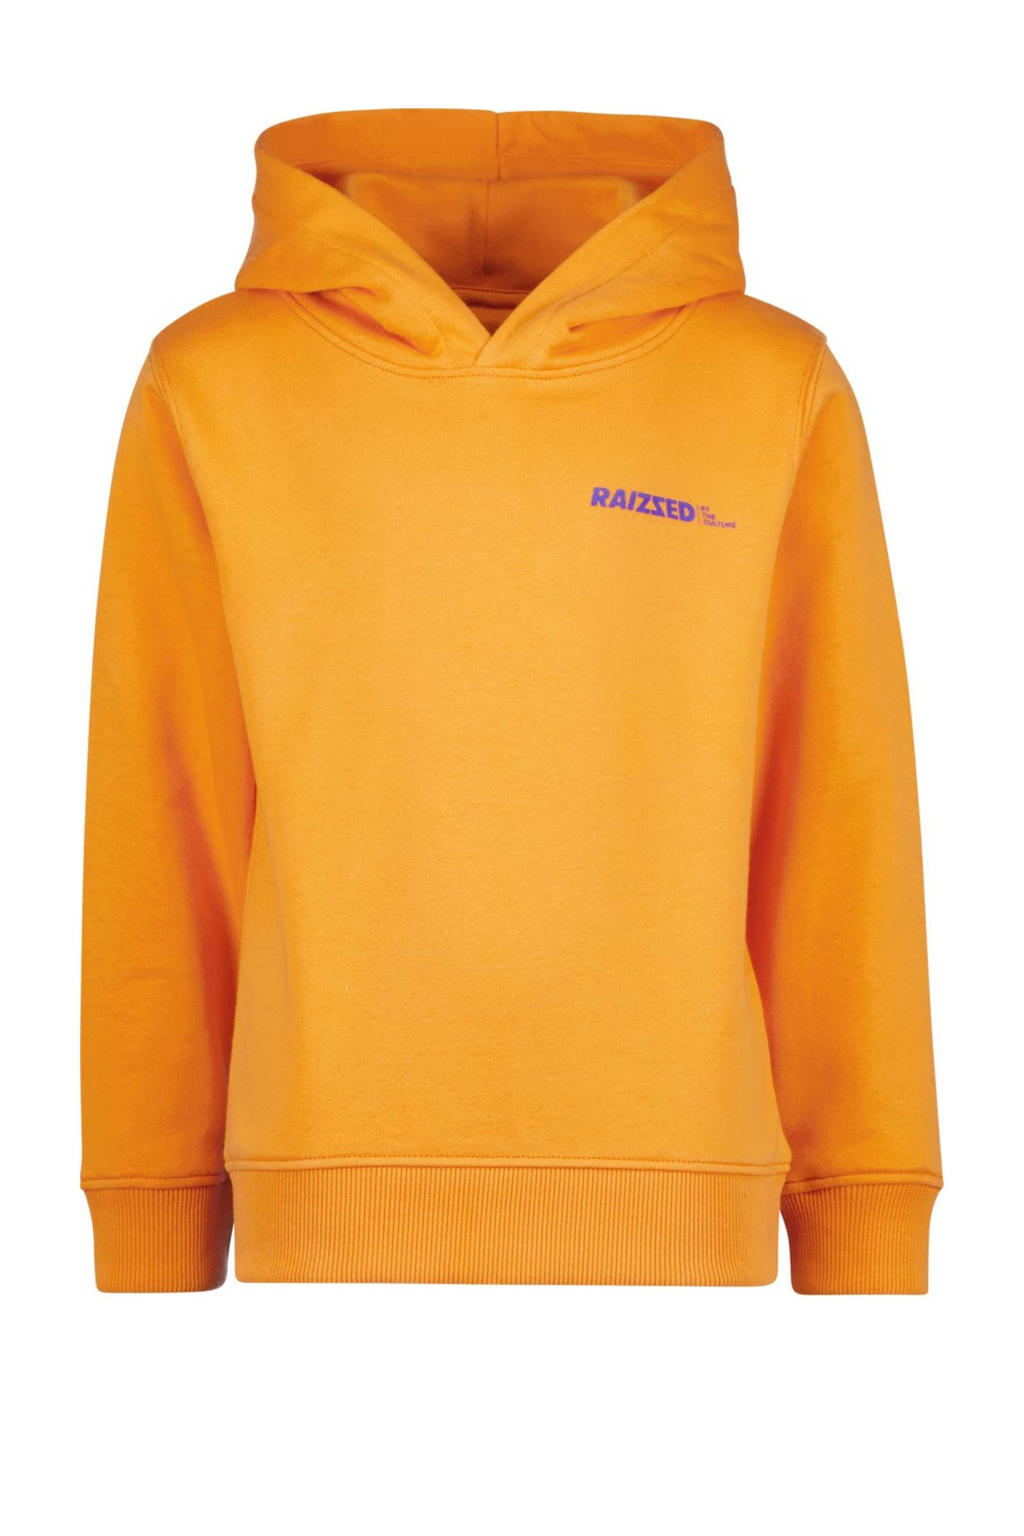 Oranje jongens Raizzed hoodie van sweat materiaal met logo dessin, lange mouwen en capuchon